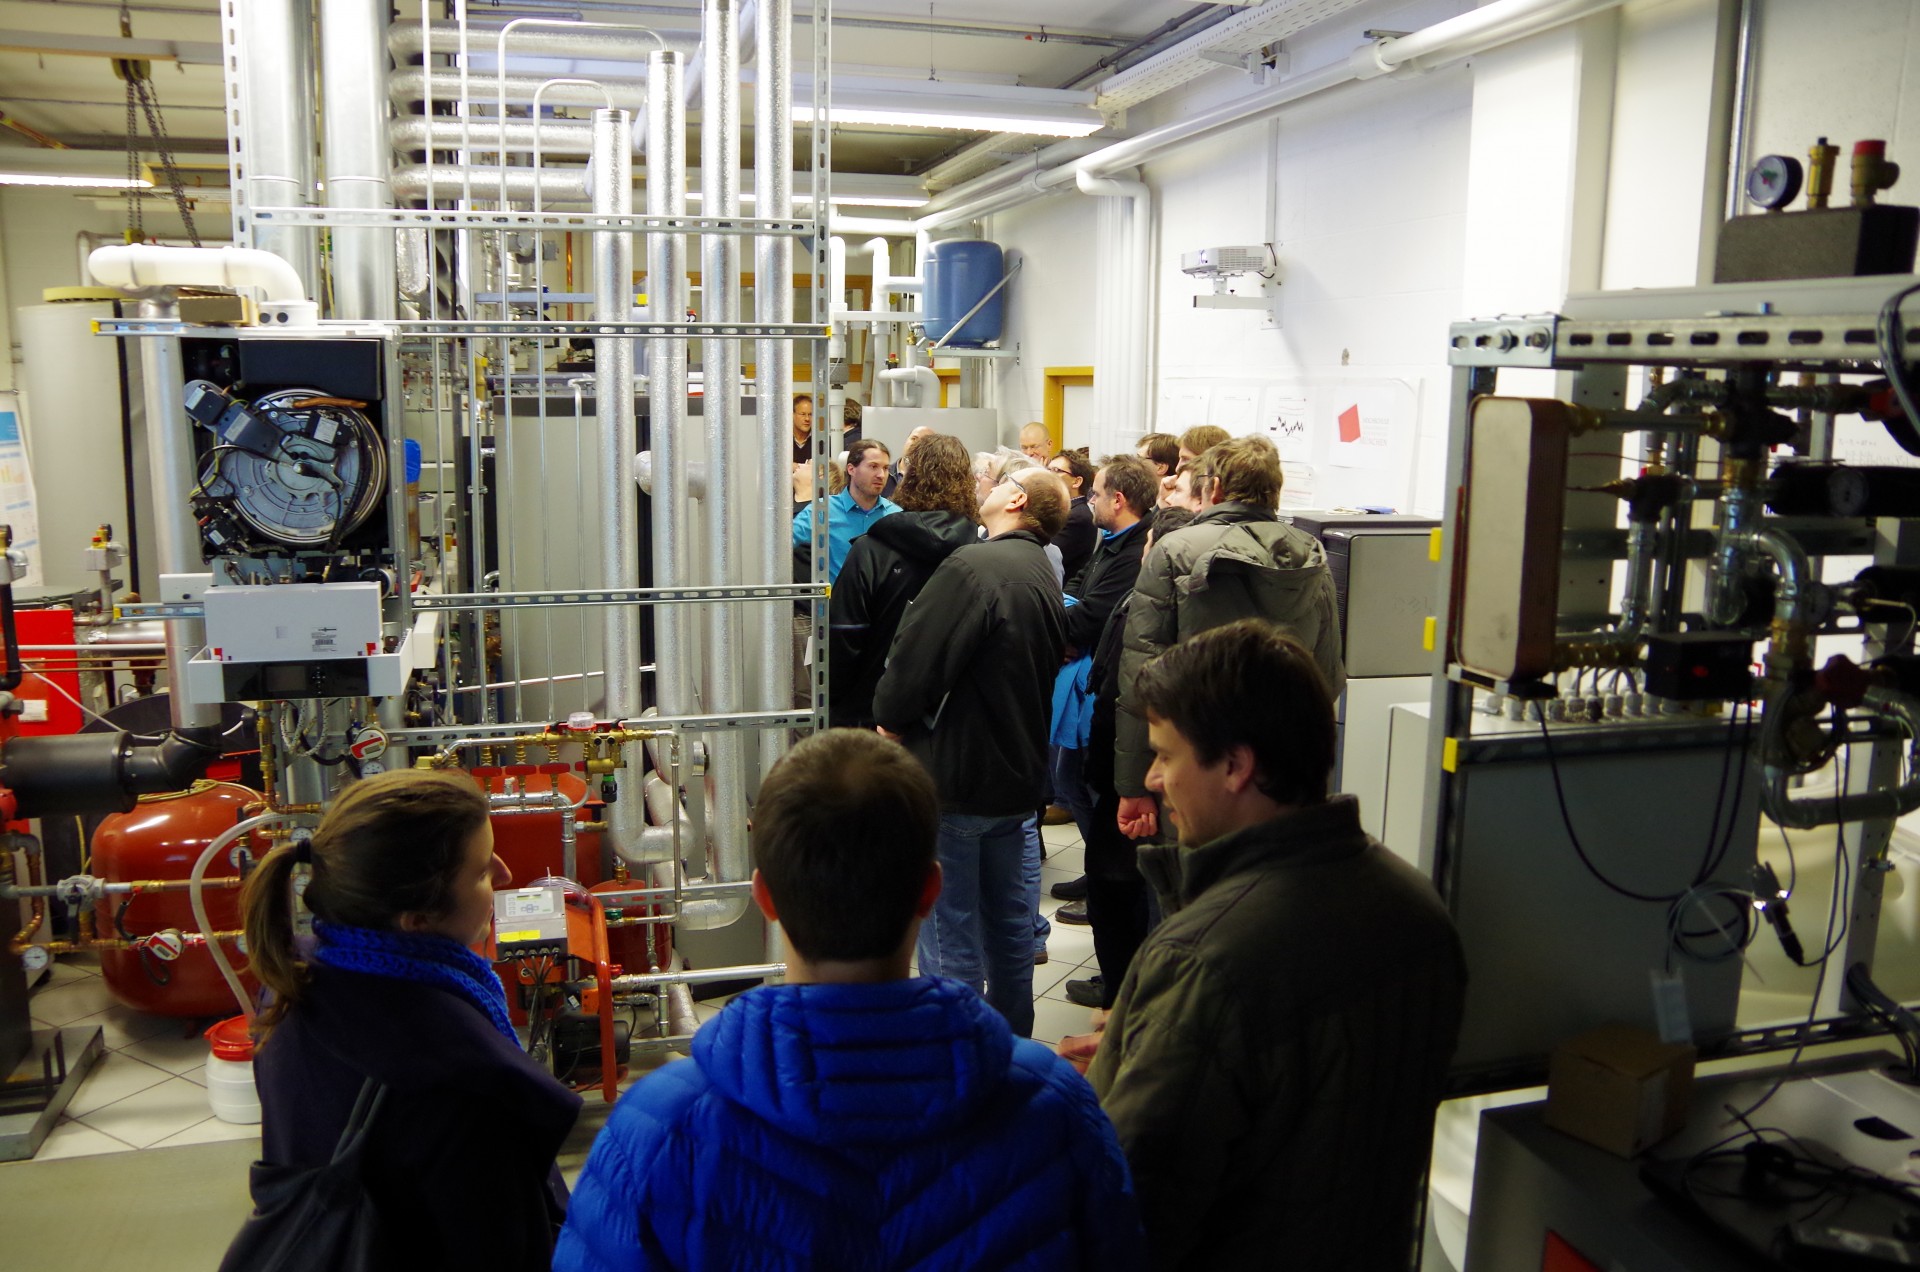 IDV-Veranstaltung Januar 2015 - Besichtigung des Versuchsstandes im heizungstechnischen Labor